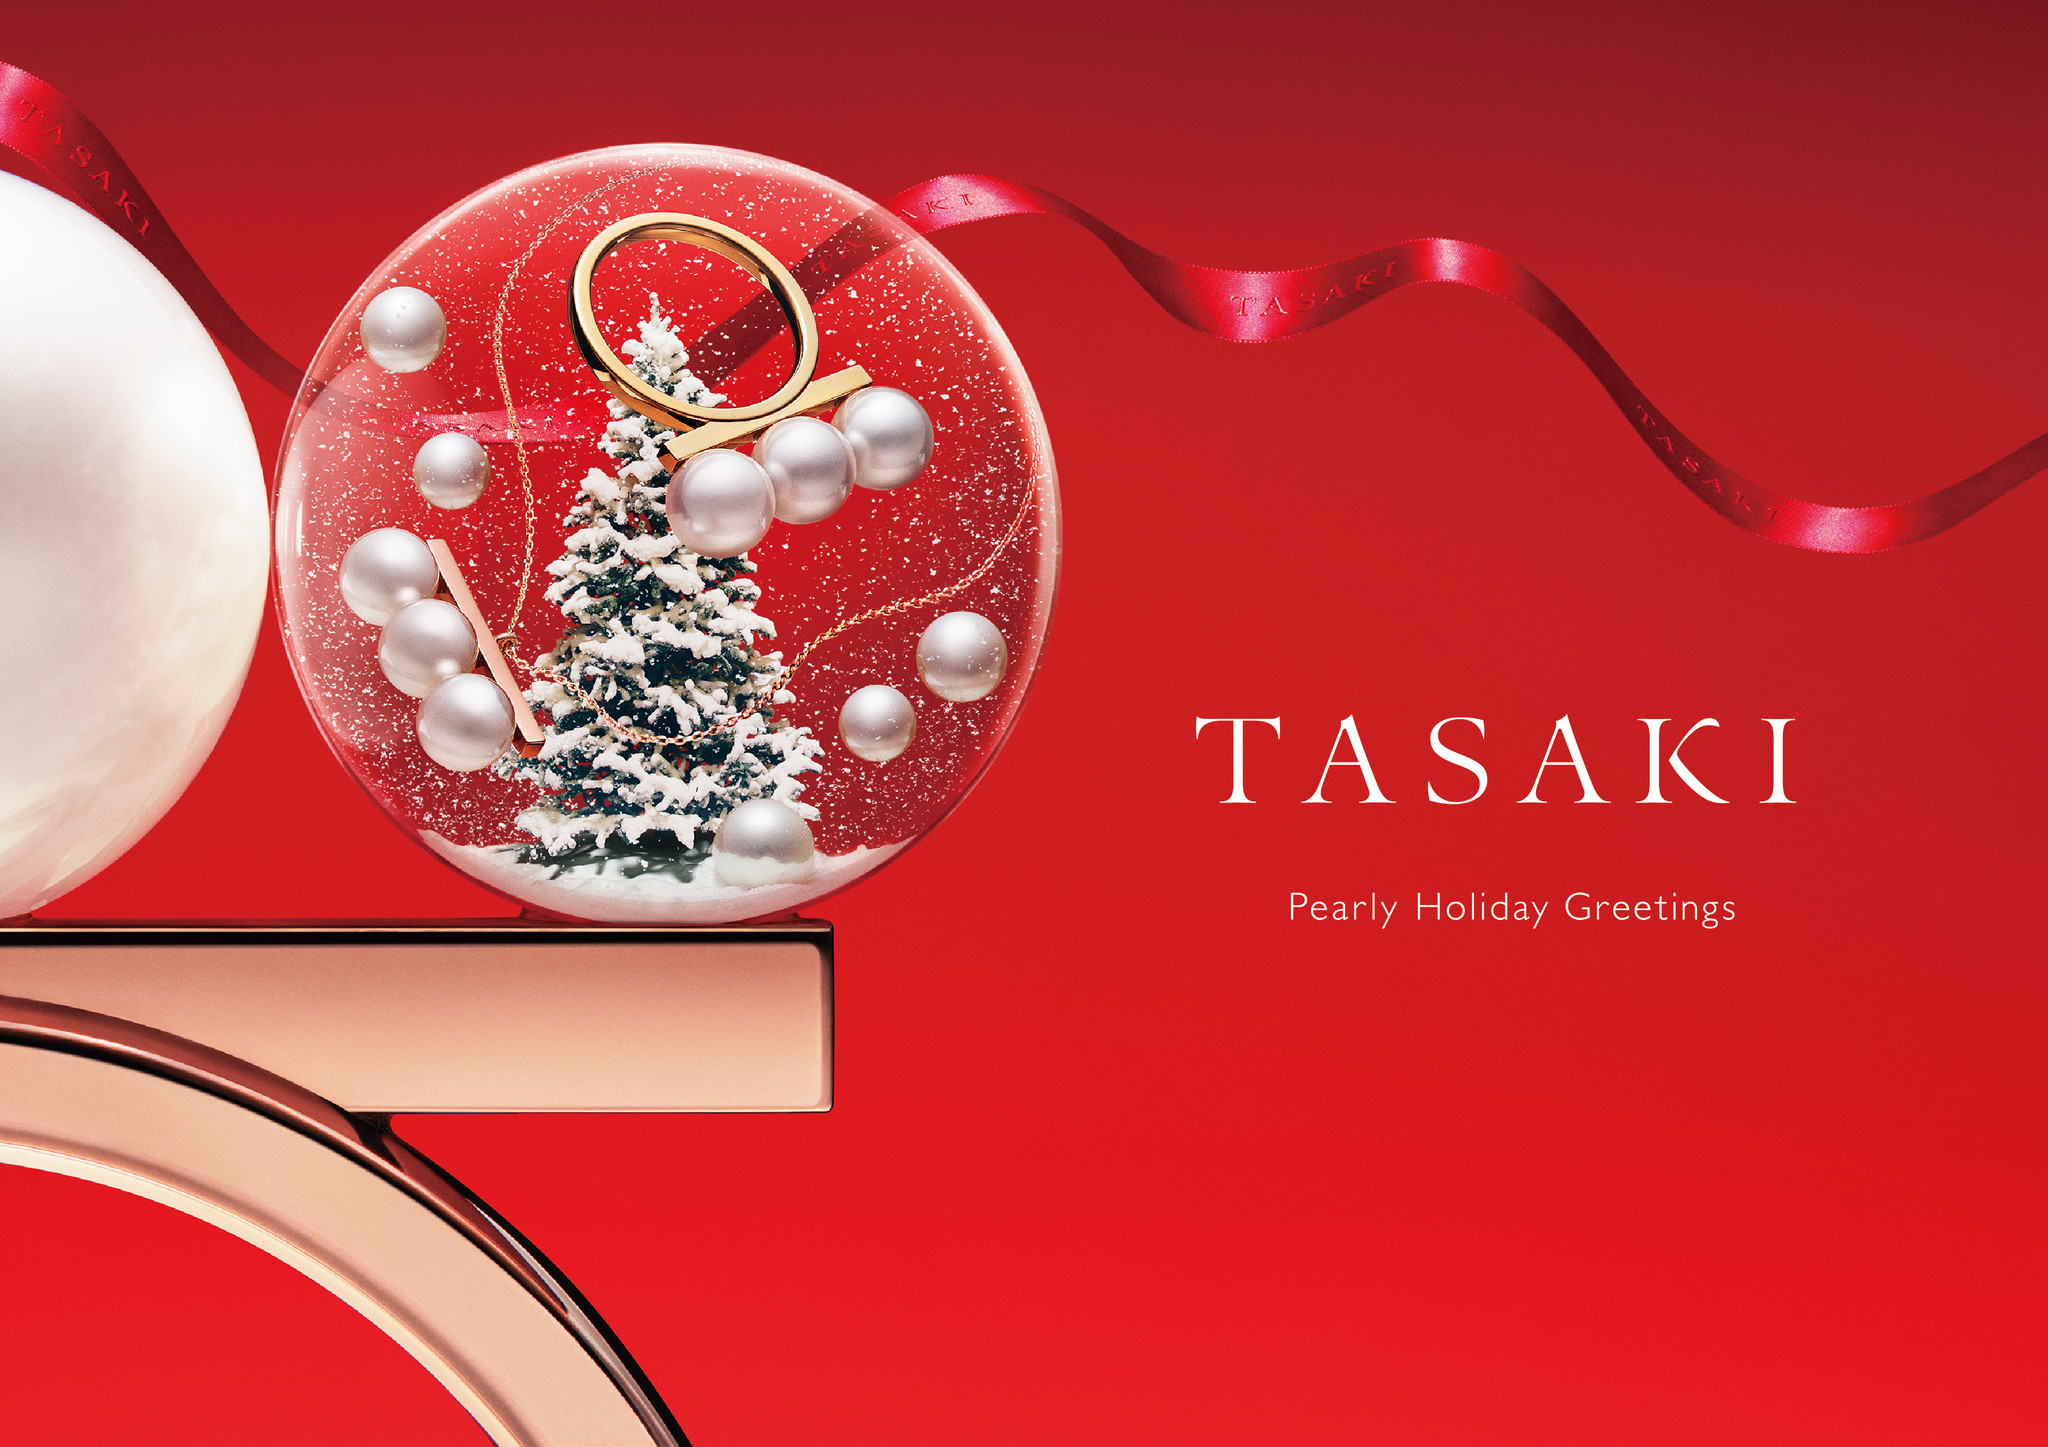 TASAKI、「Pearly Holiday Greetings」プロモーションを11月11日（水